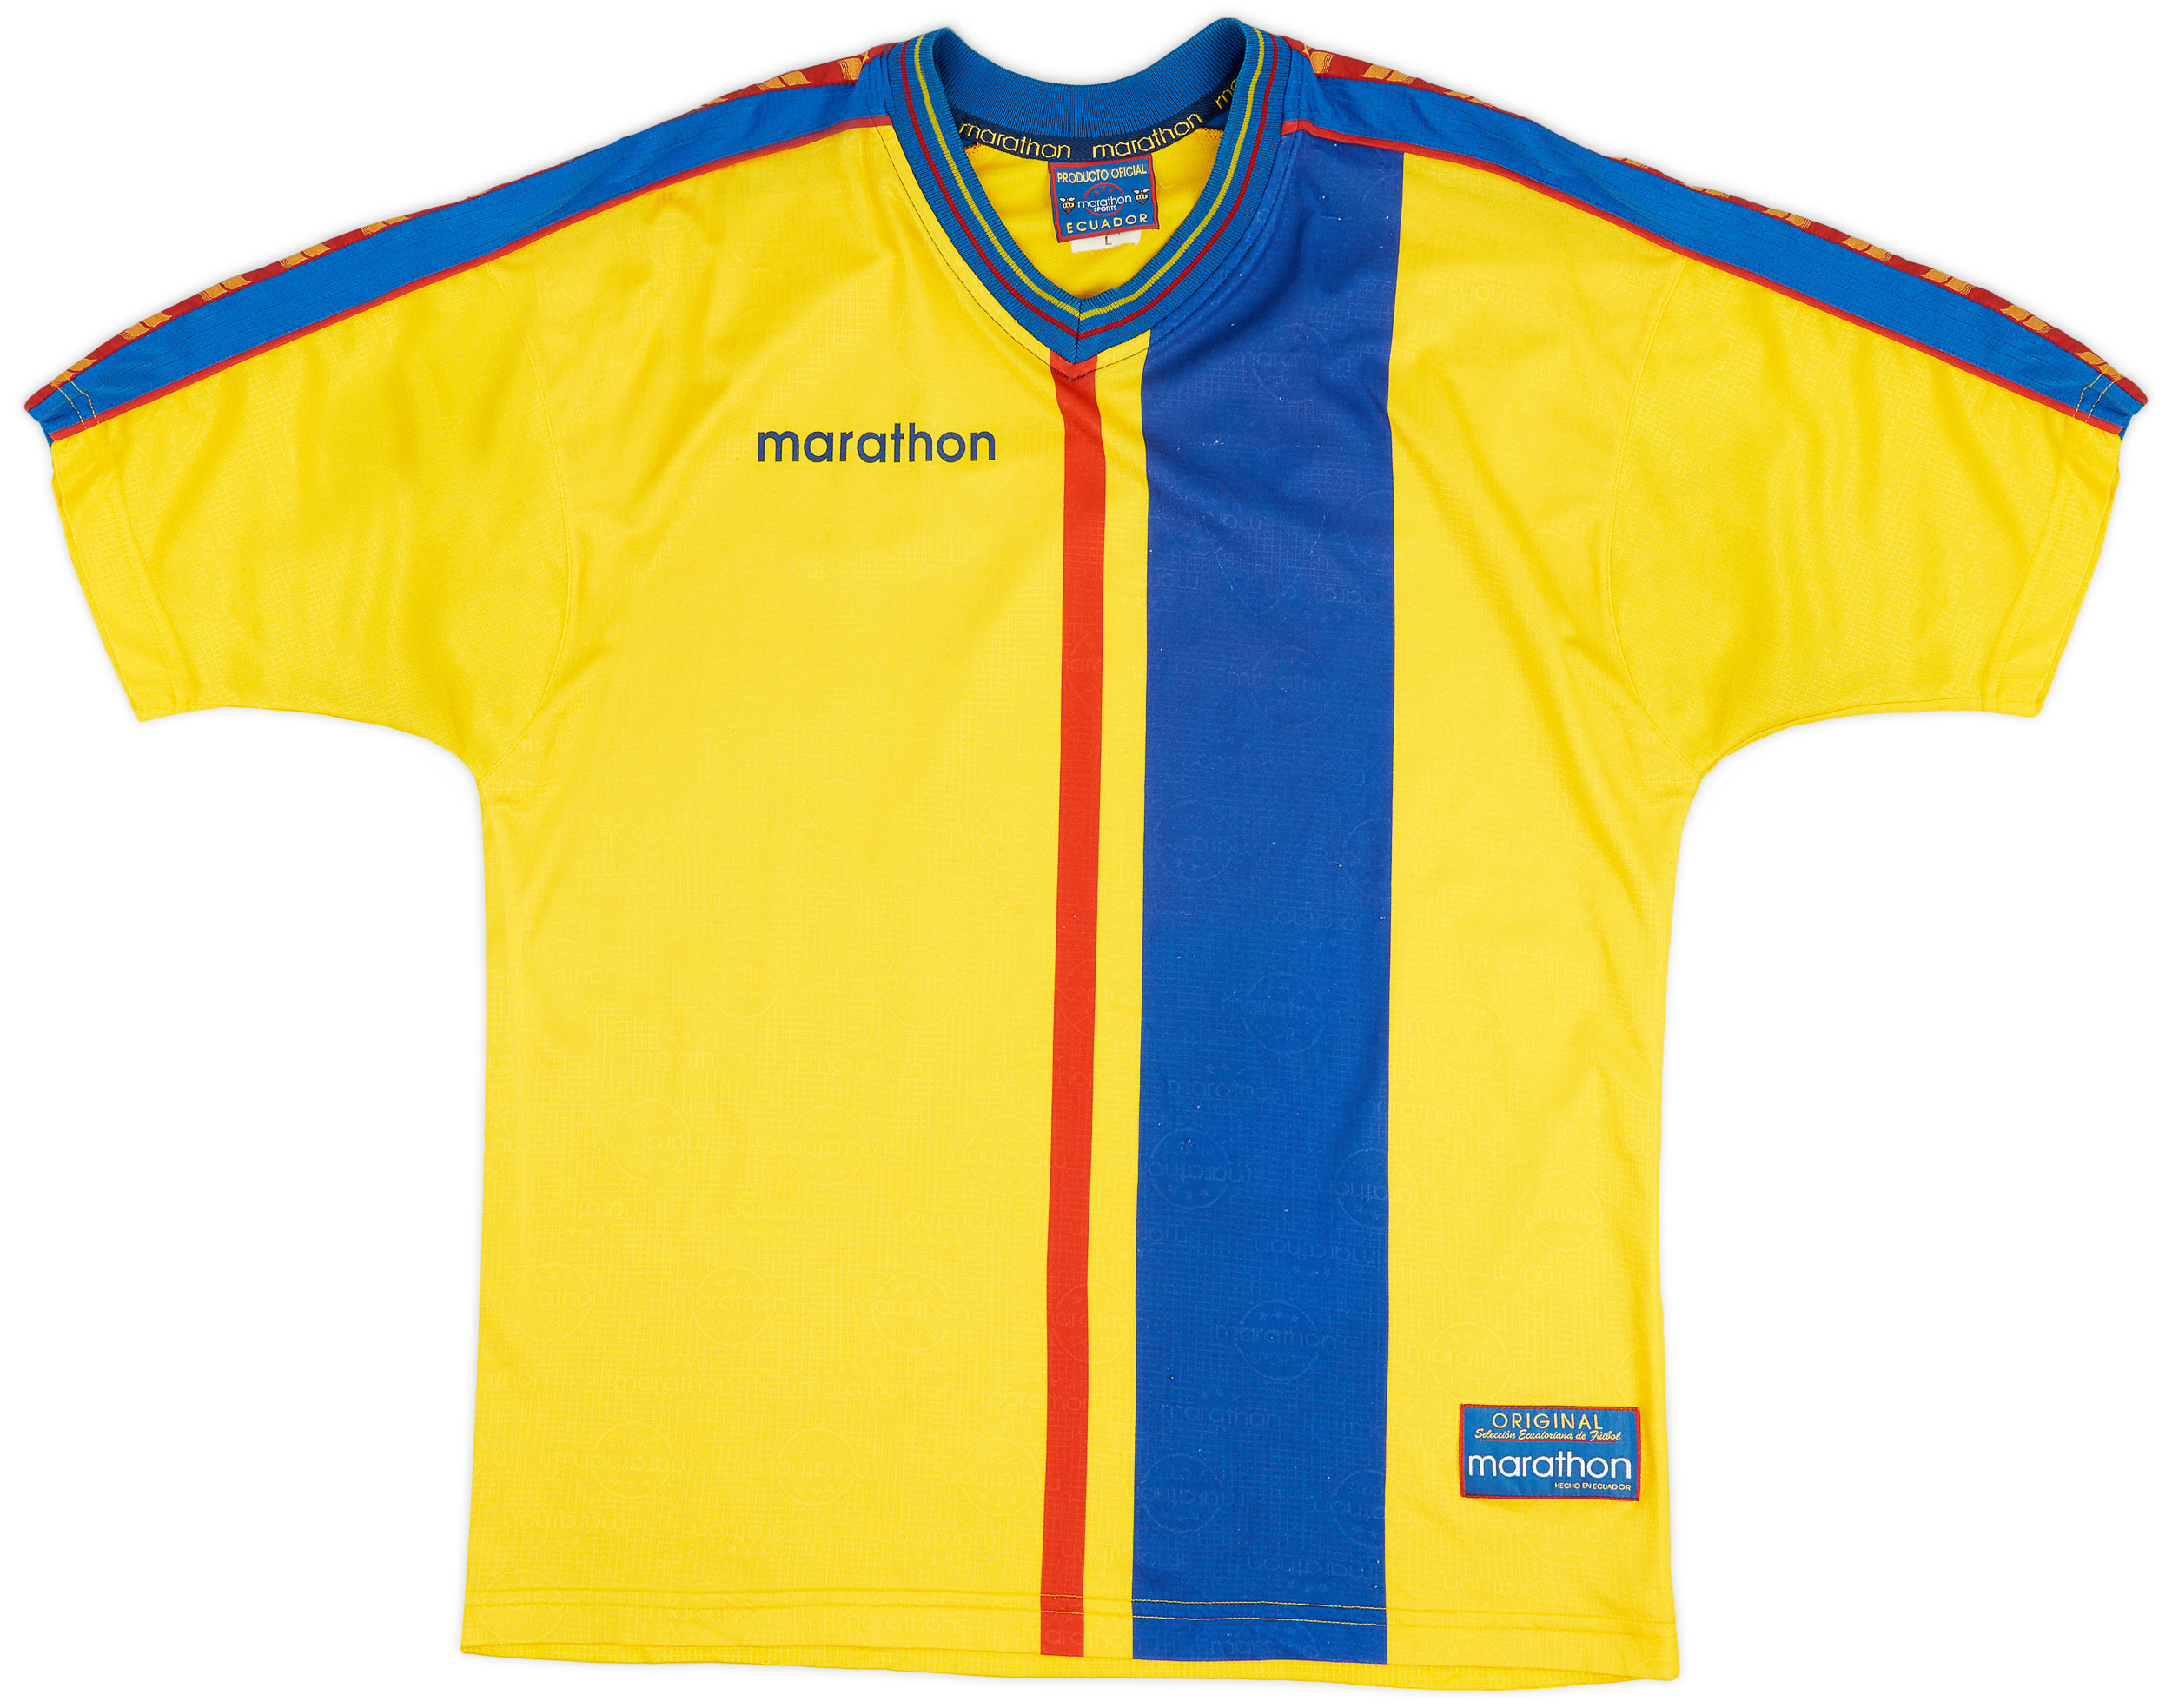 Ecuador  home shirt  (Original)